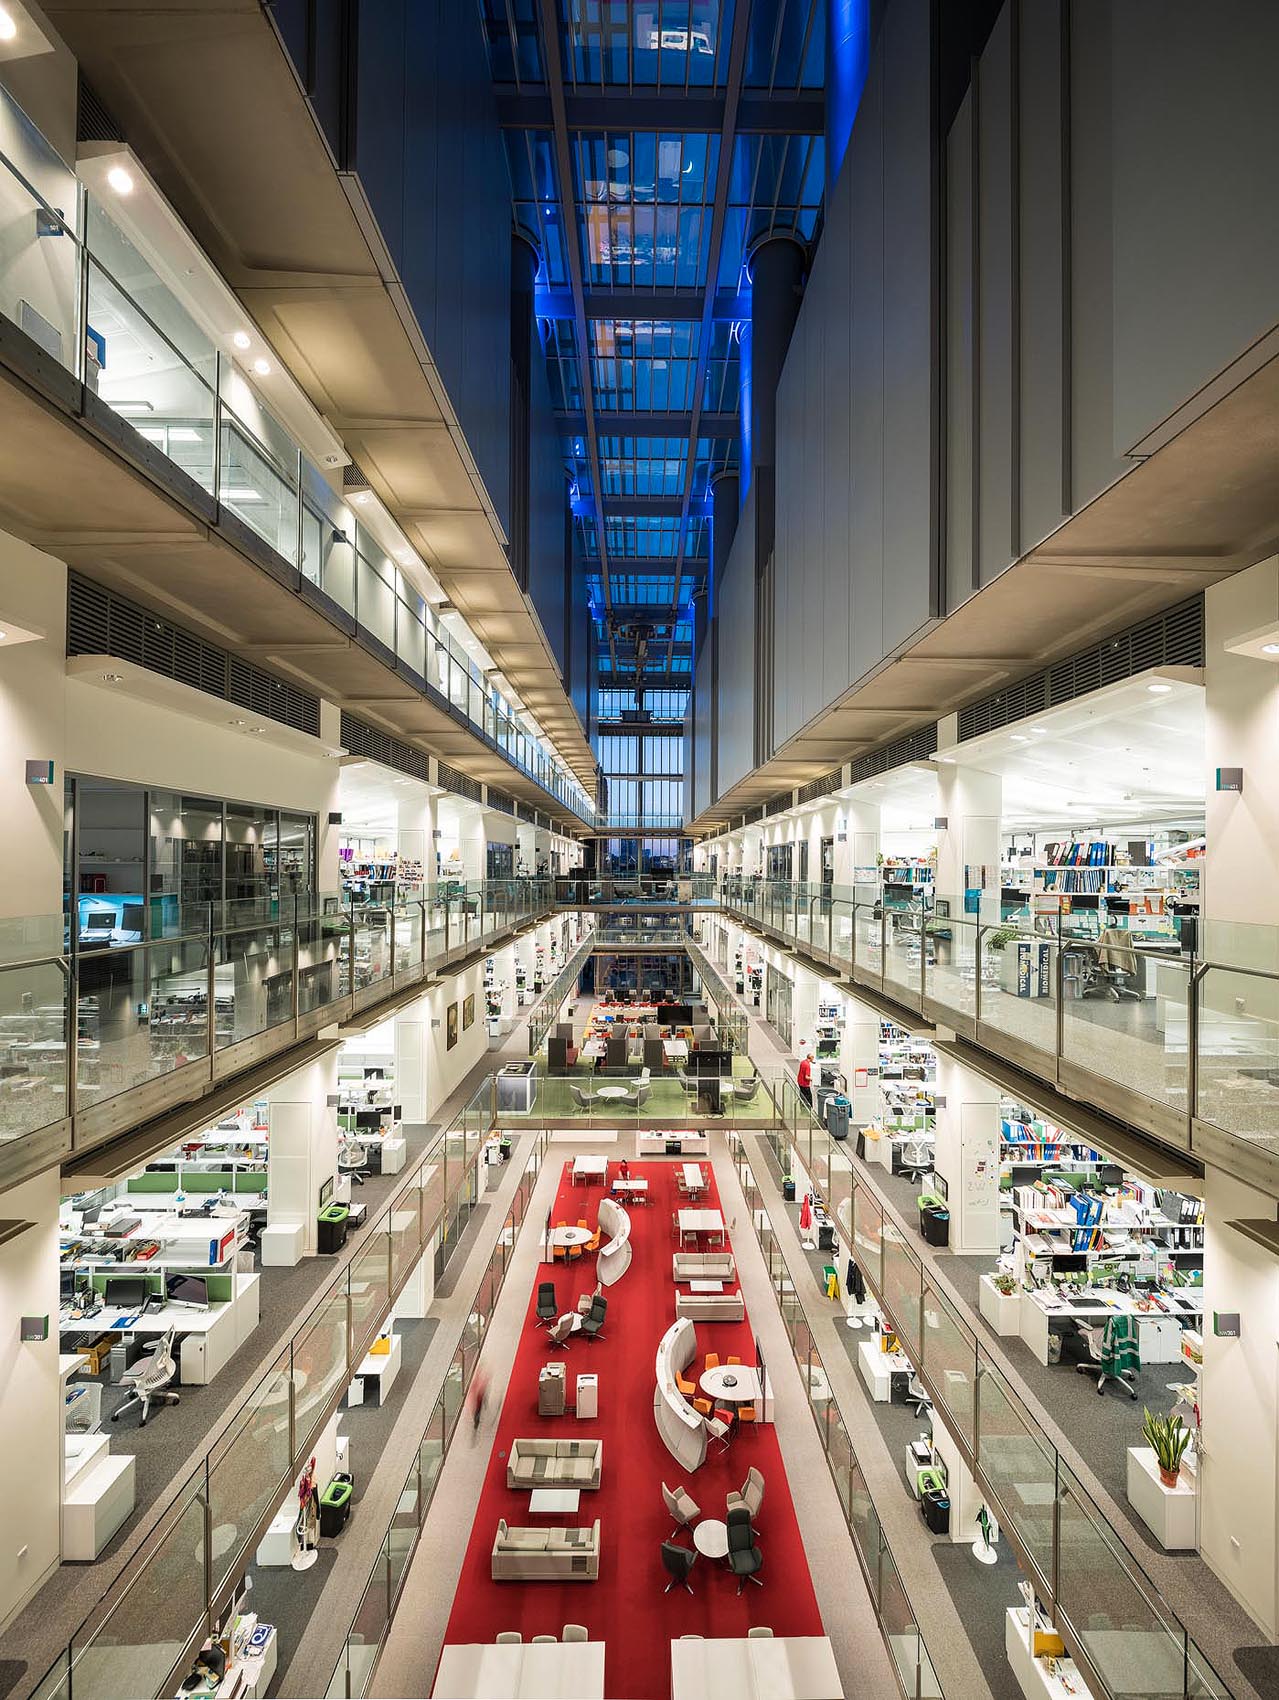 francis-crick-institute-interior-modern-architecture-london-atrium